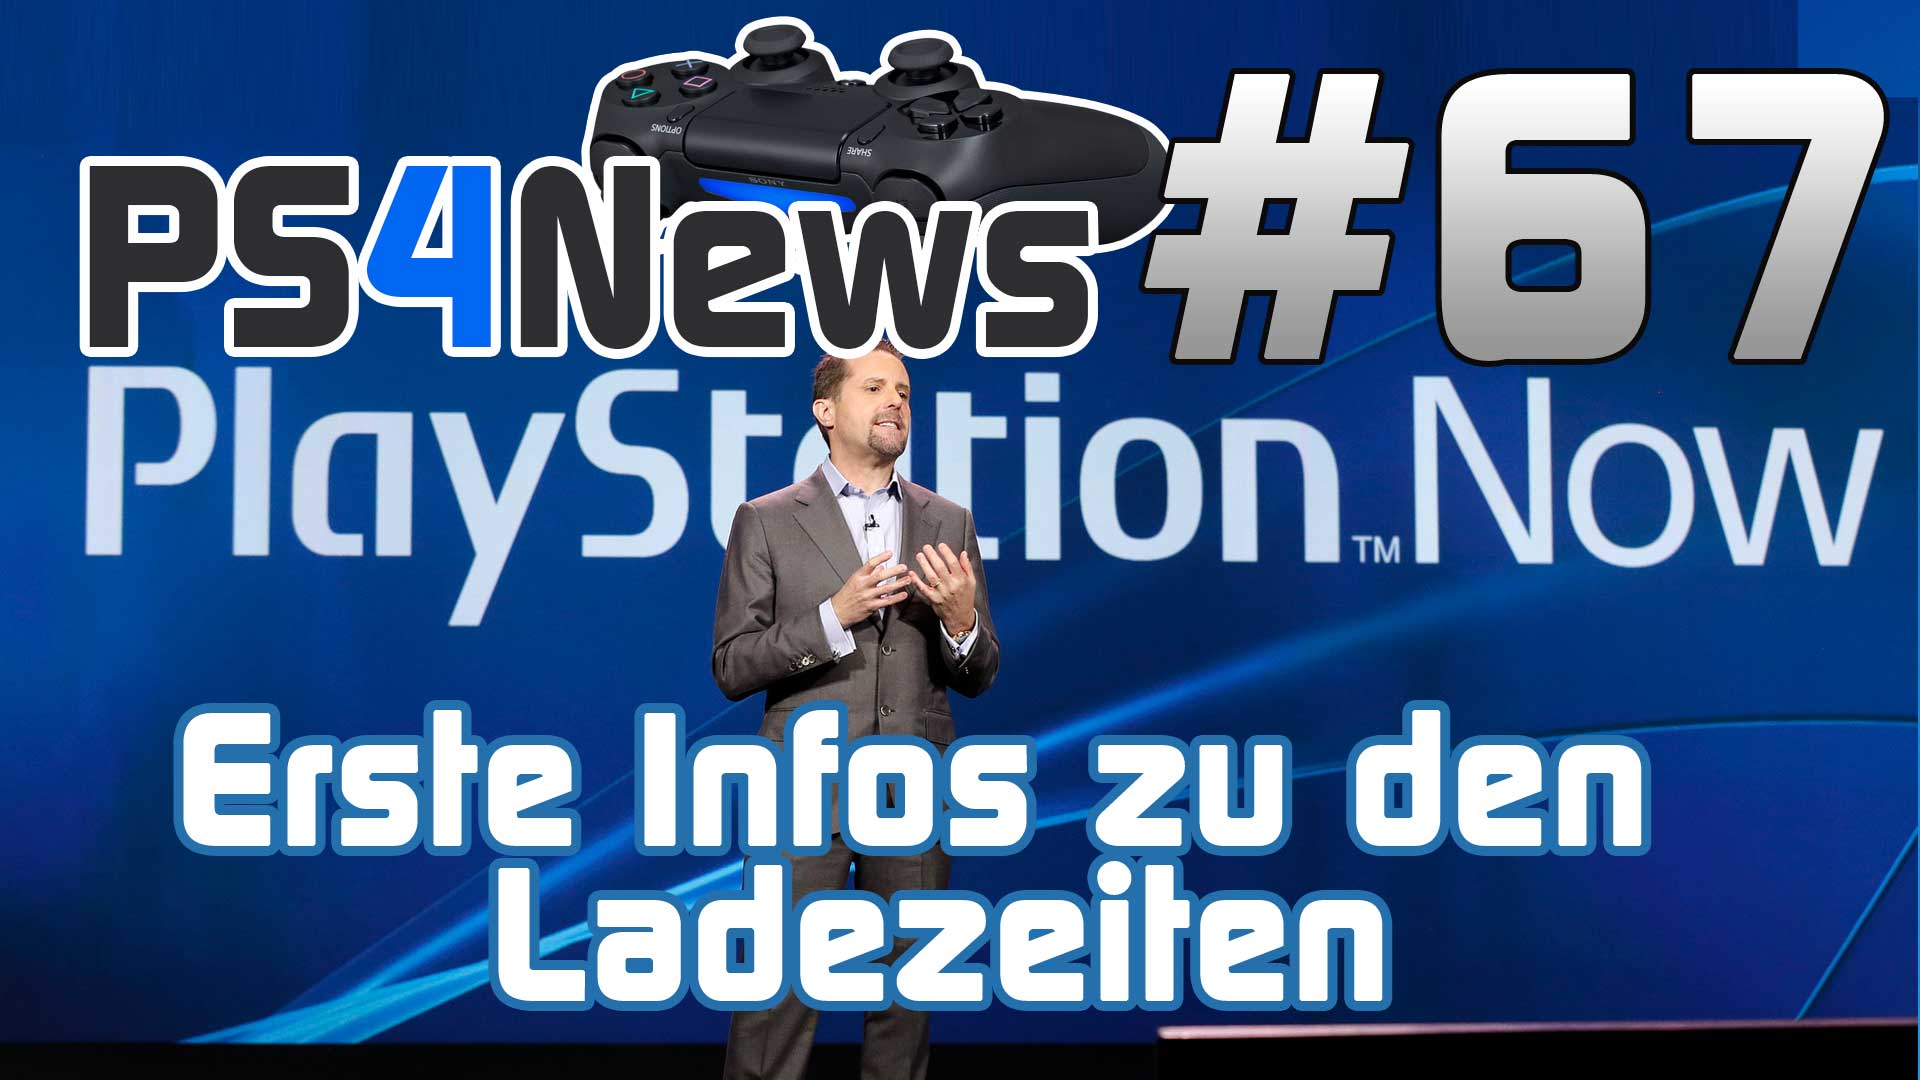 PlayStation Now Ladezeiten und weitere Informationen